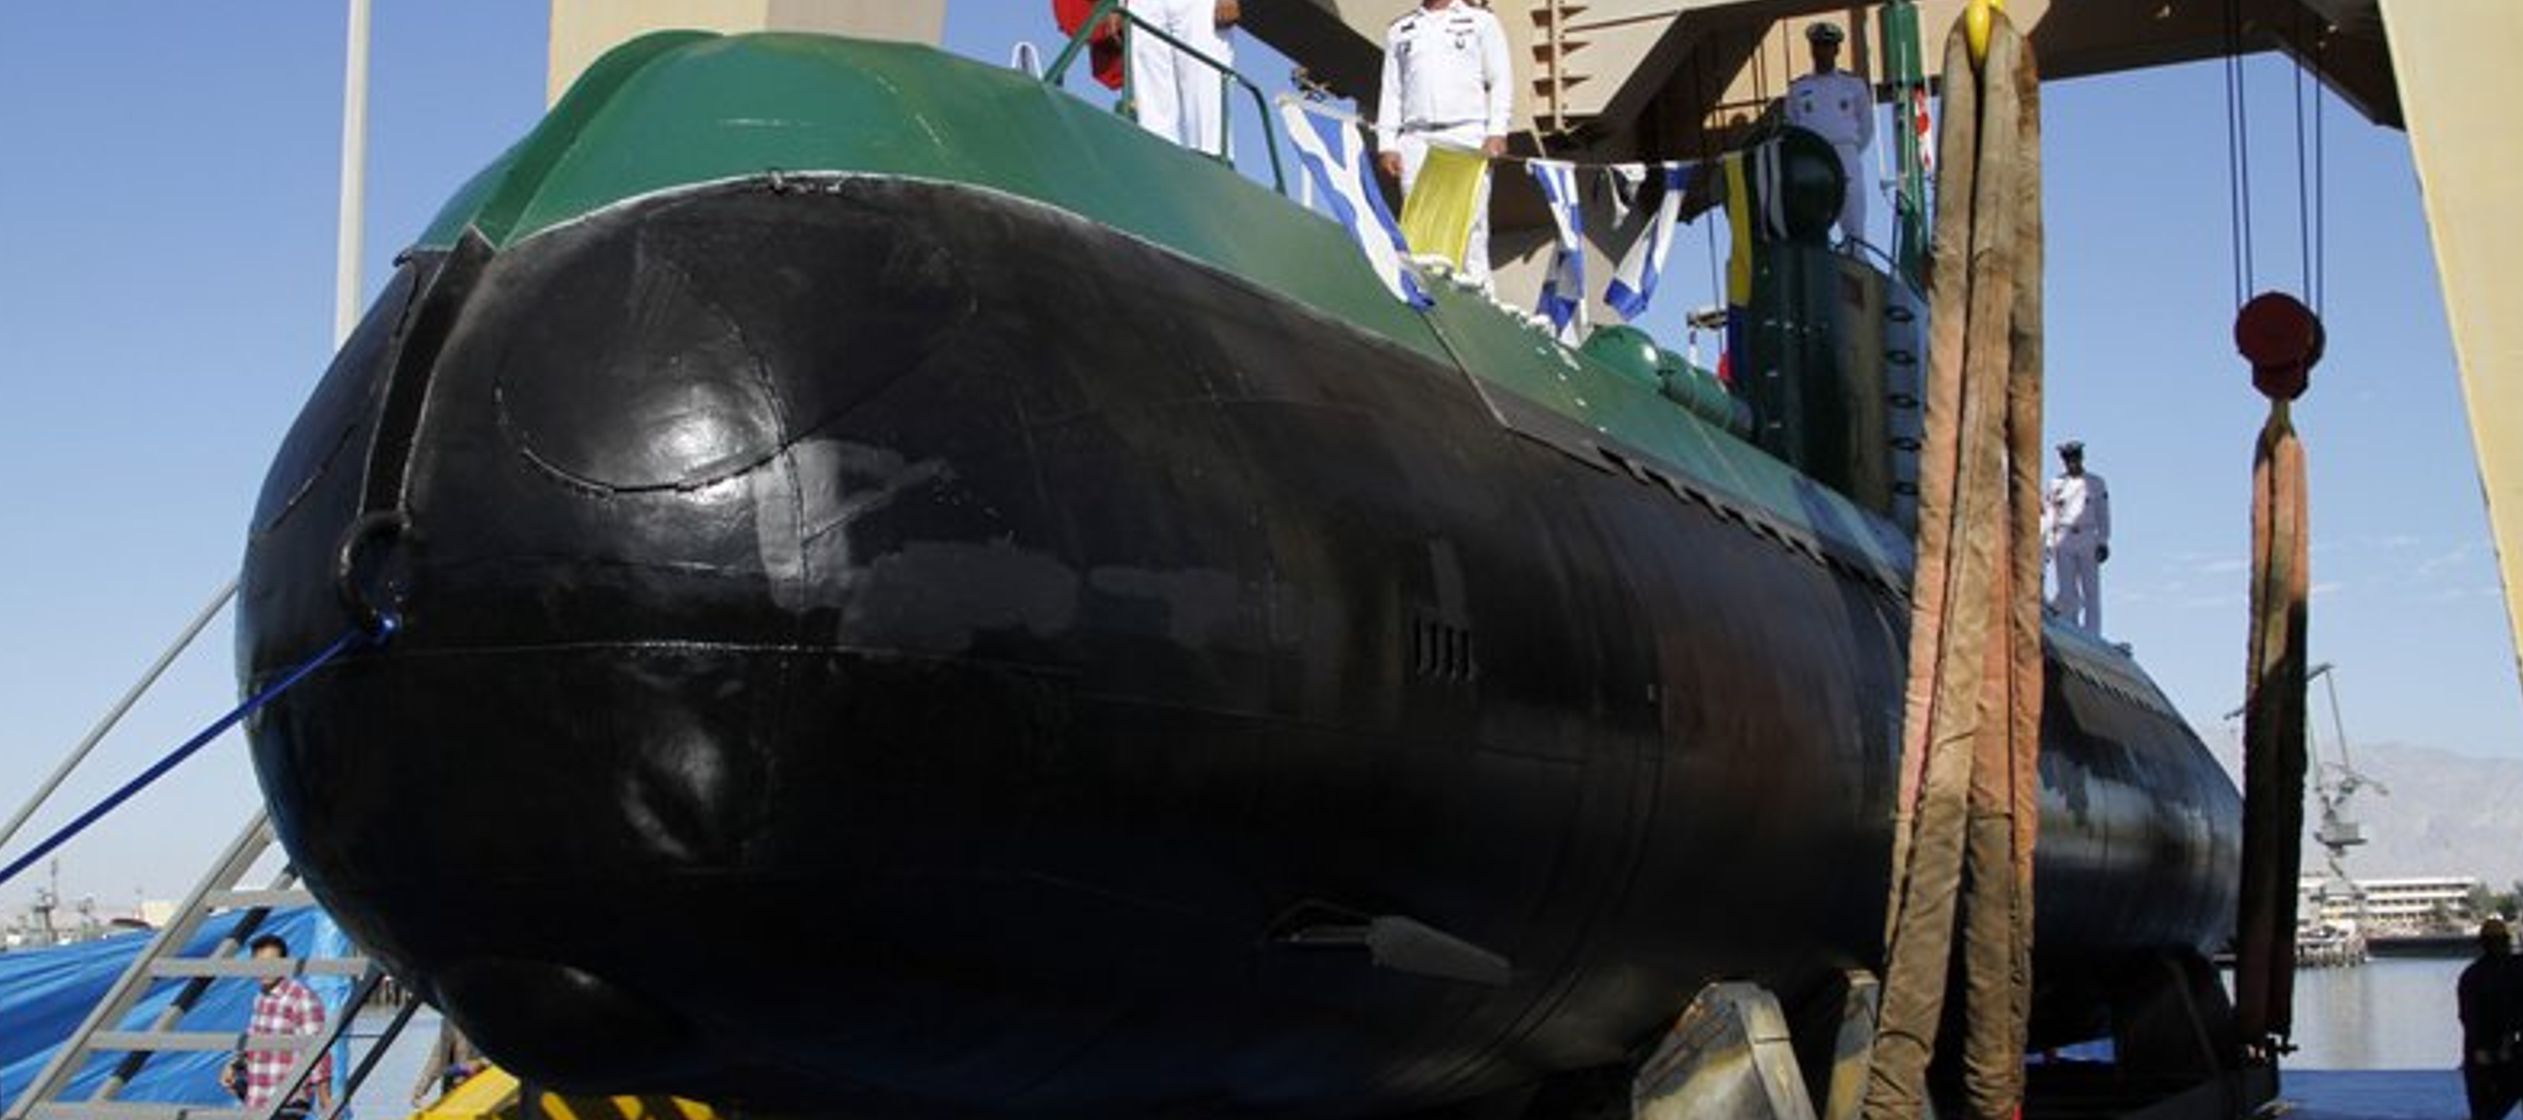 Irán no ha revelado el número de submarinos en su flota. Se cree que tiene 12...